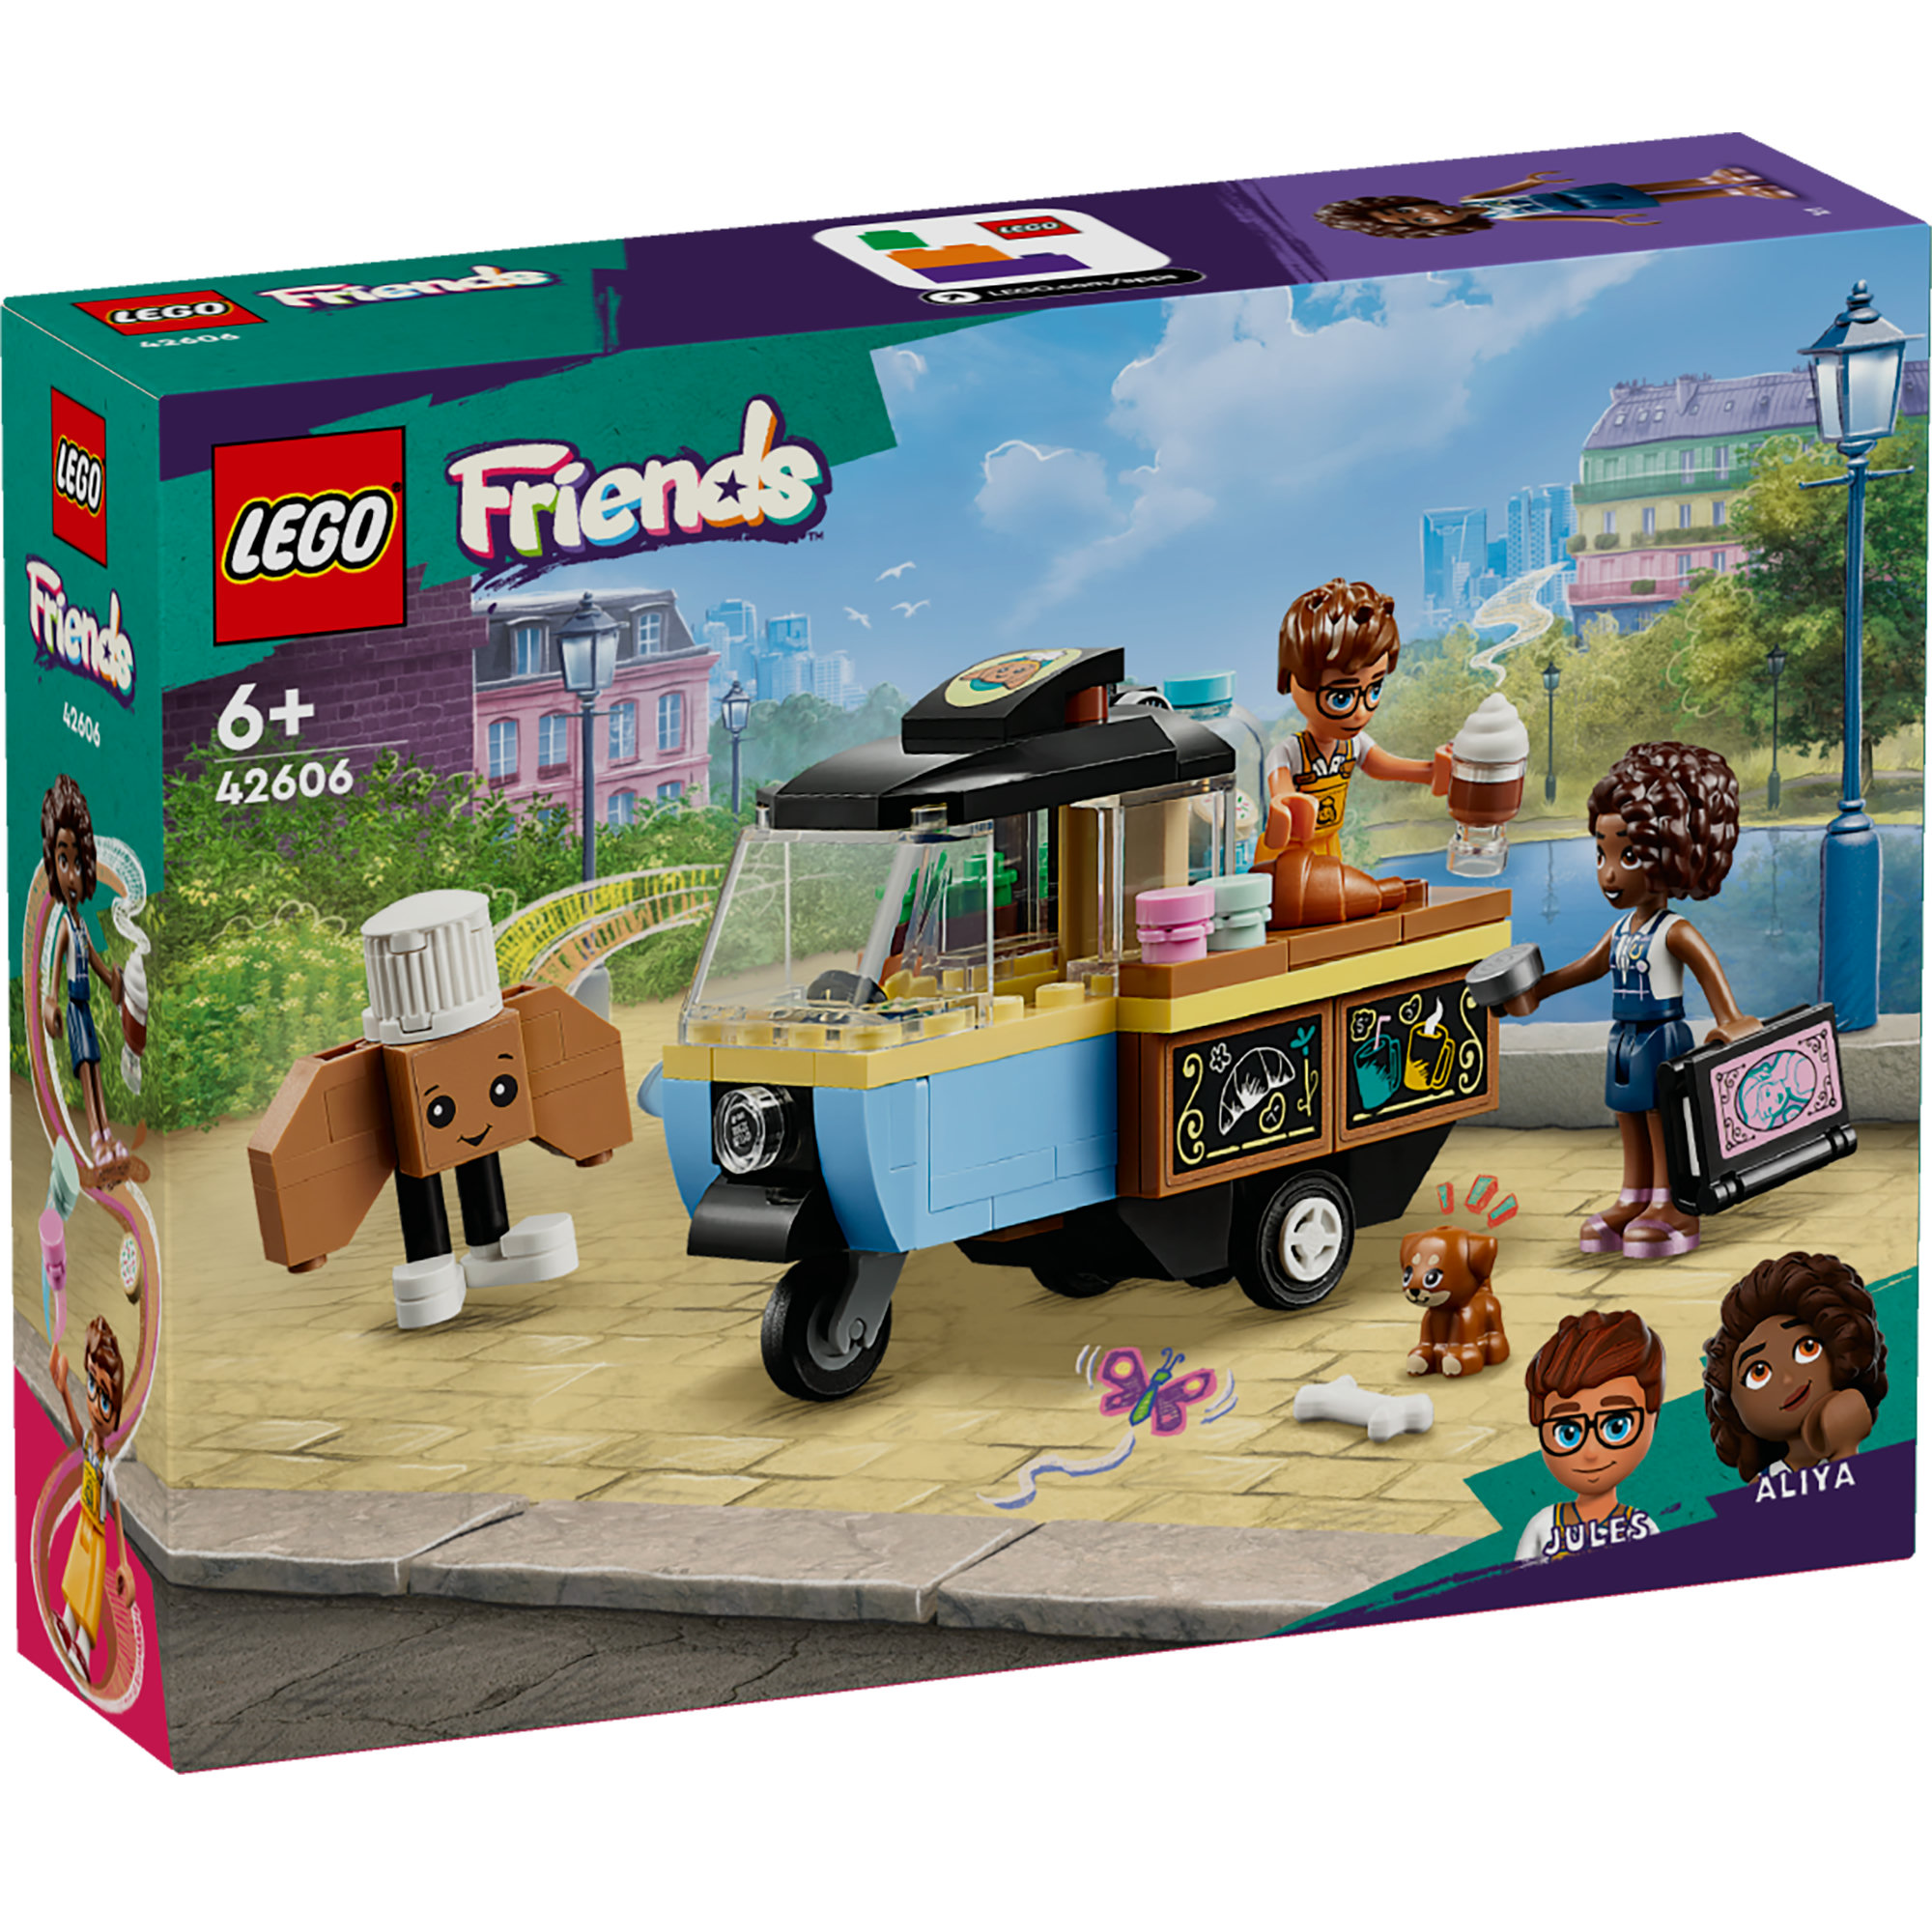 LEGO FRIENDS 42606 Đồ chơi lắp ráp Tiệm bánh ngọt di động (125 chi tiết)